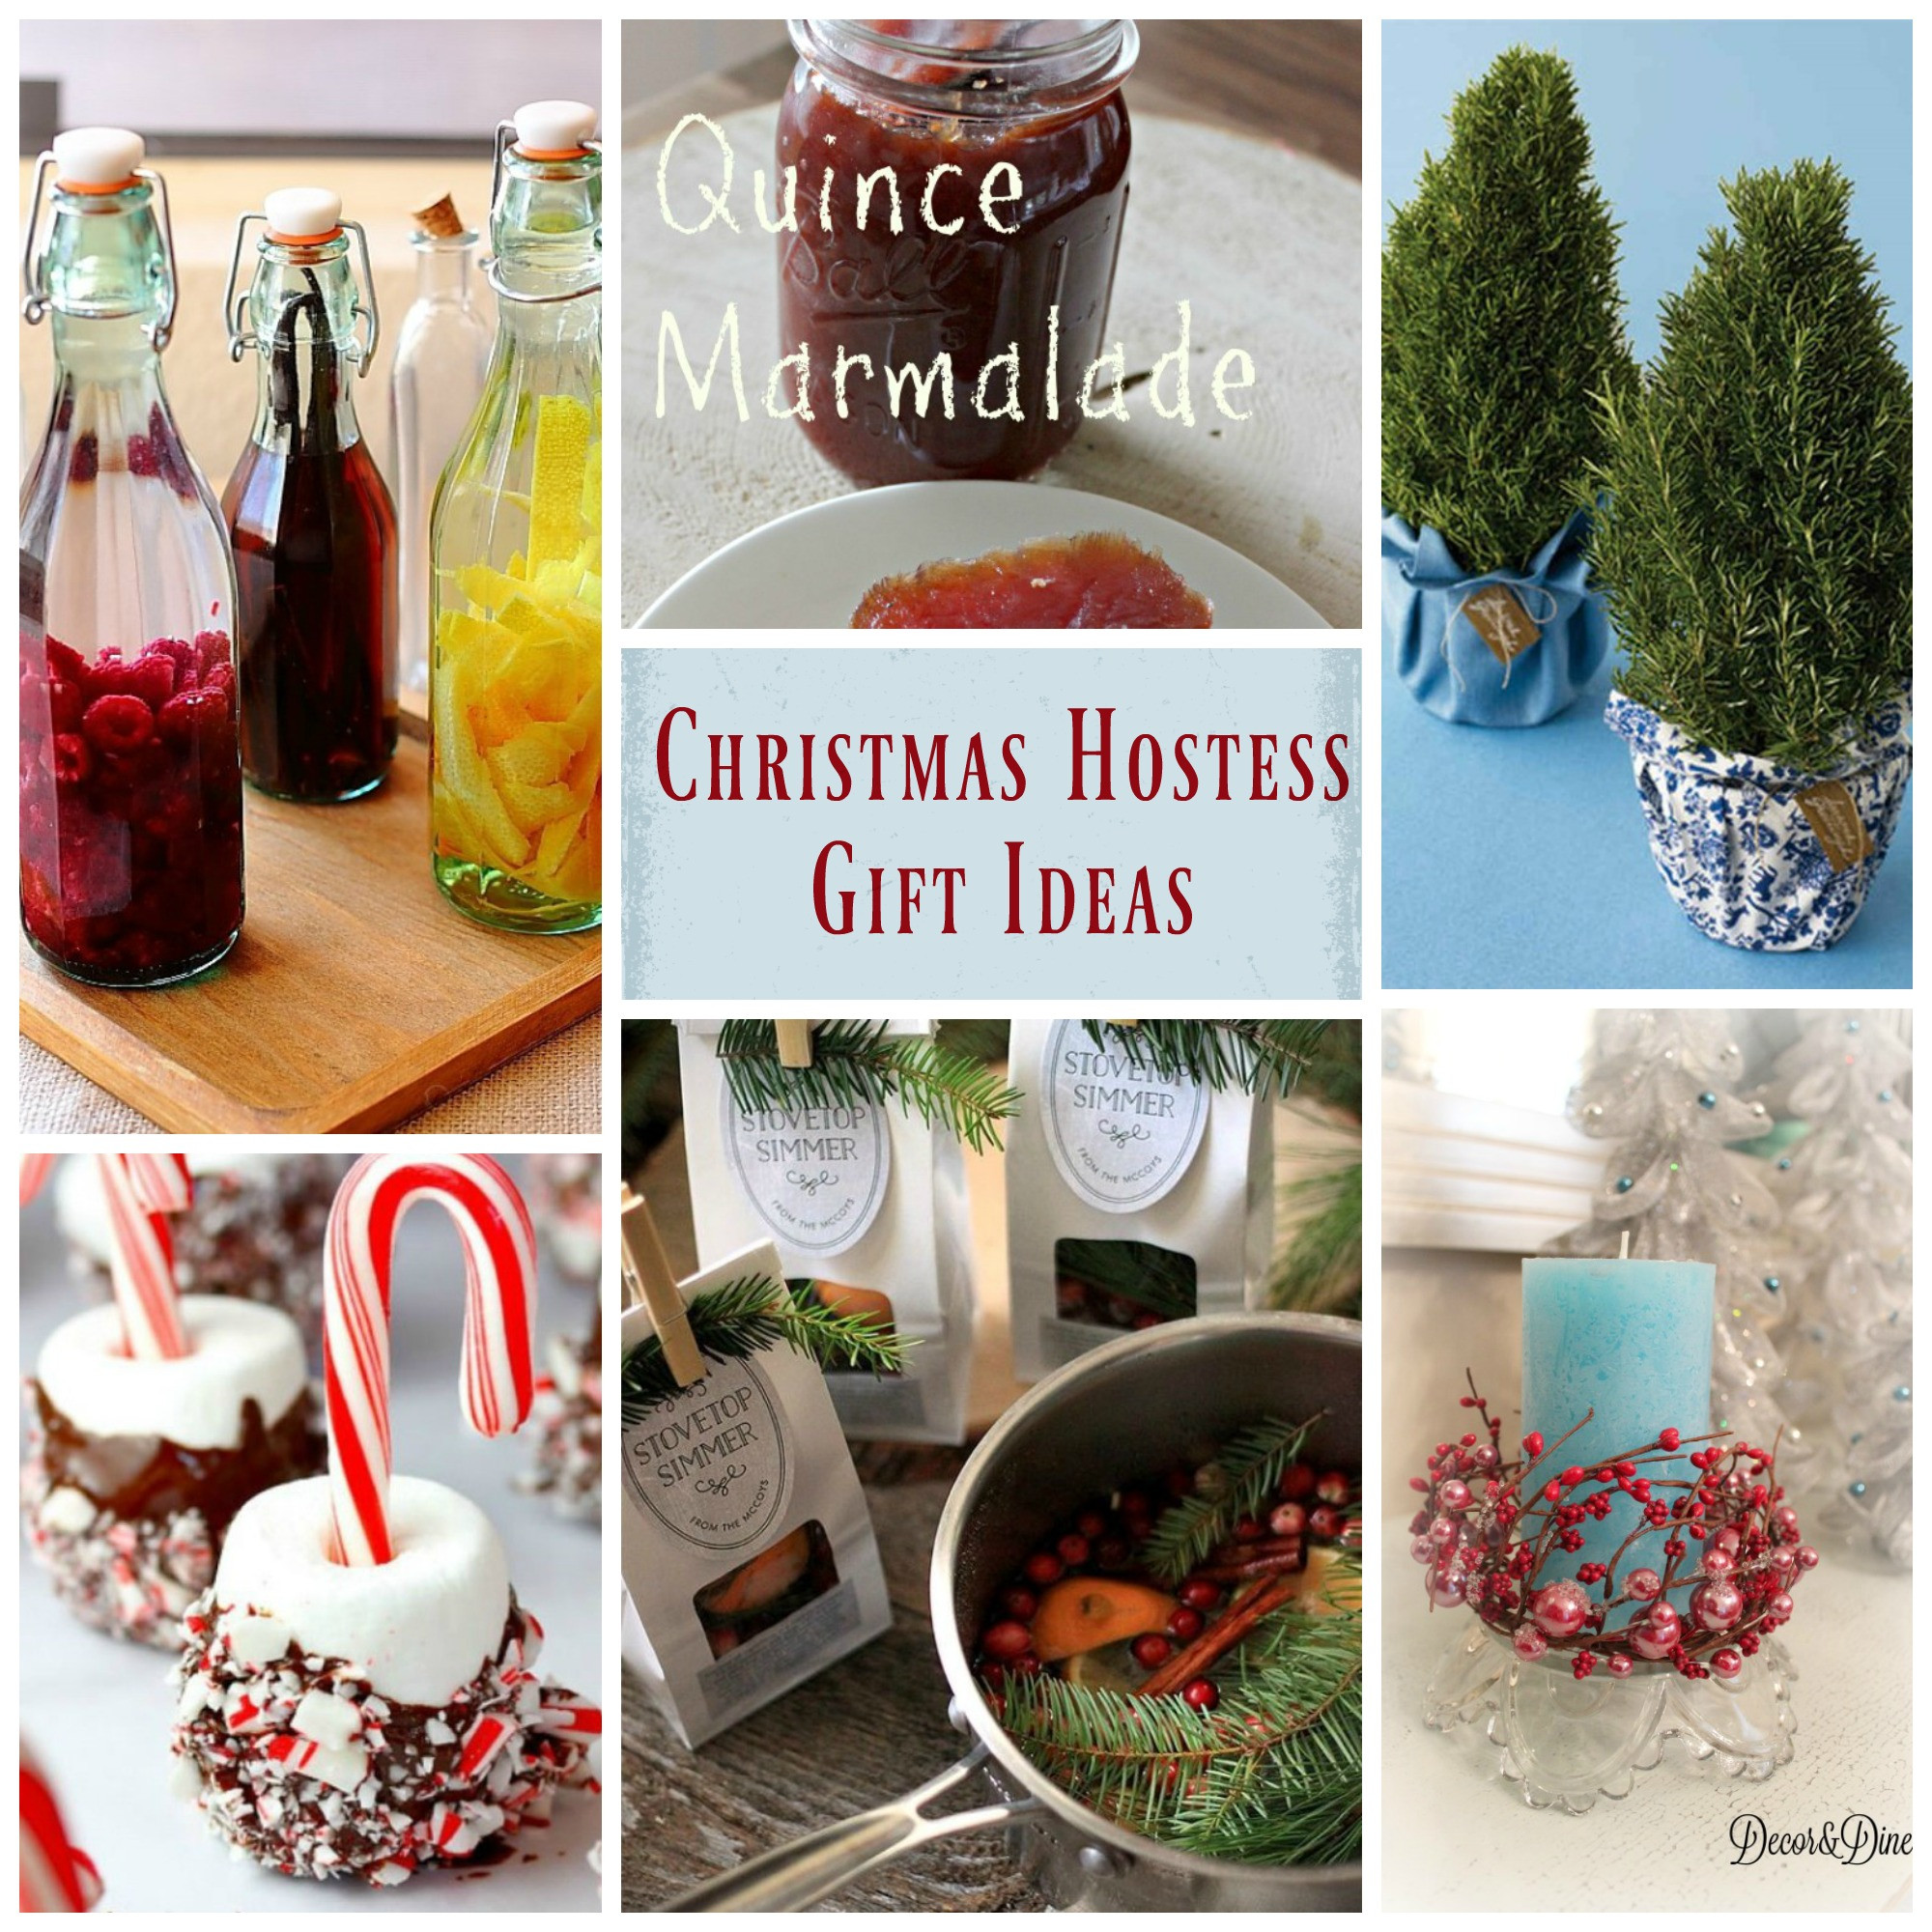 Holiday Hostess Gift Ideas
 Christmas Hostess Gift Ideas